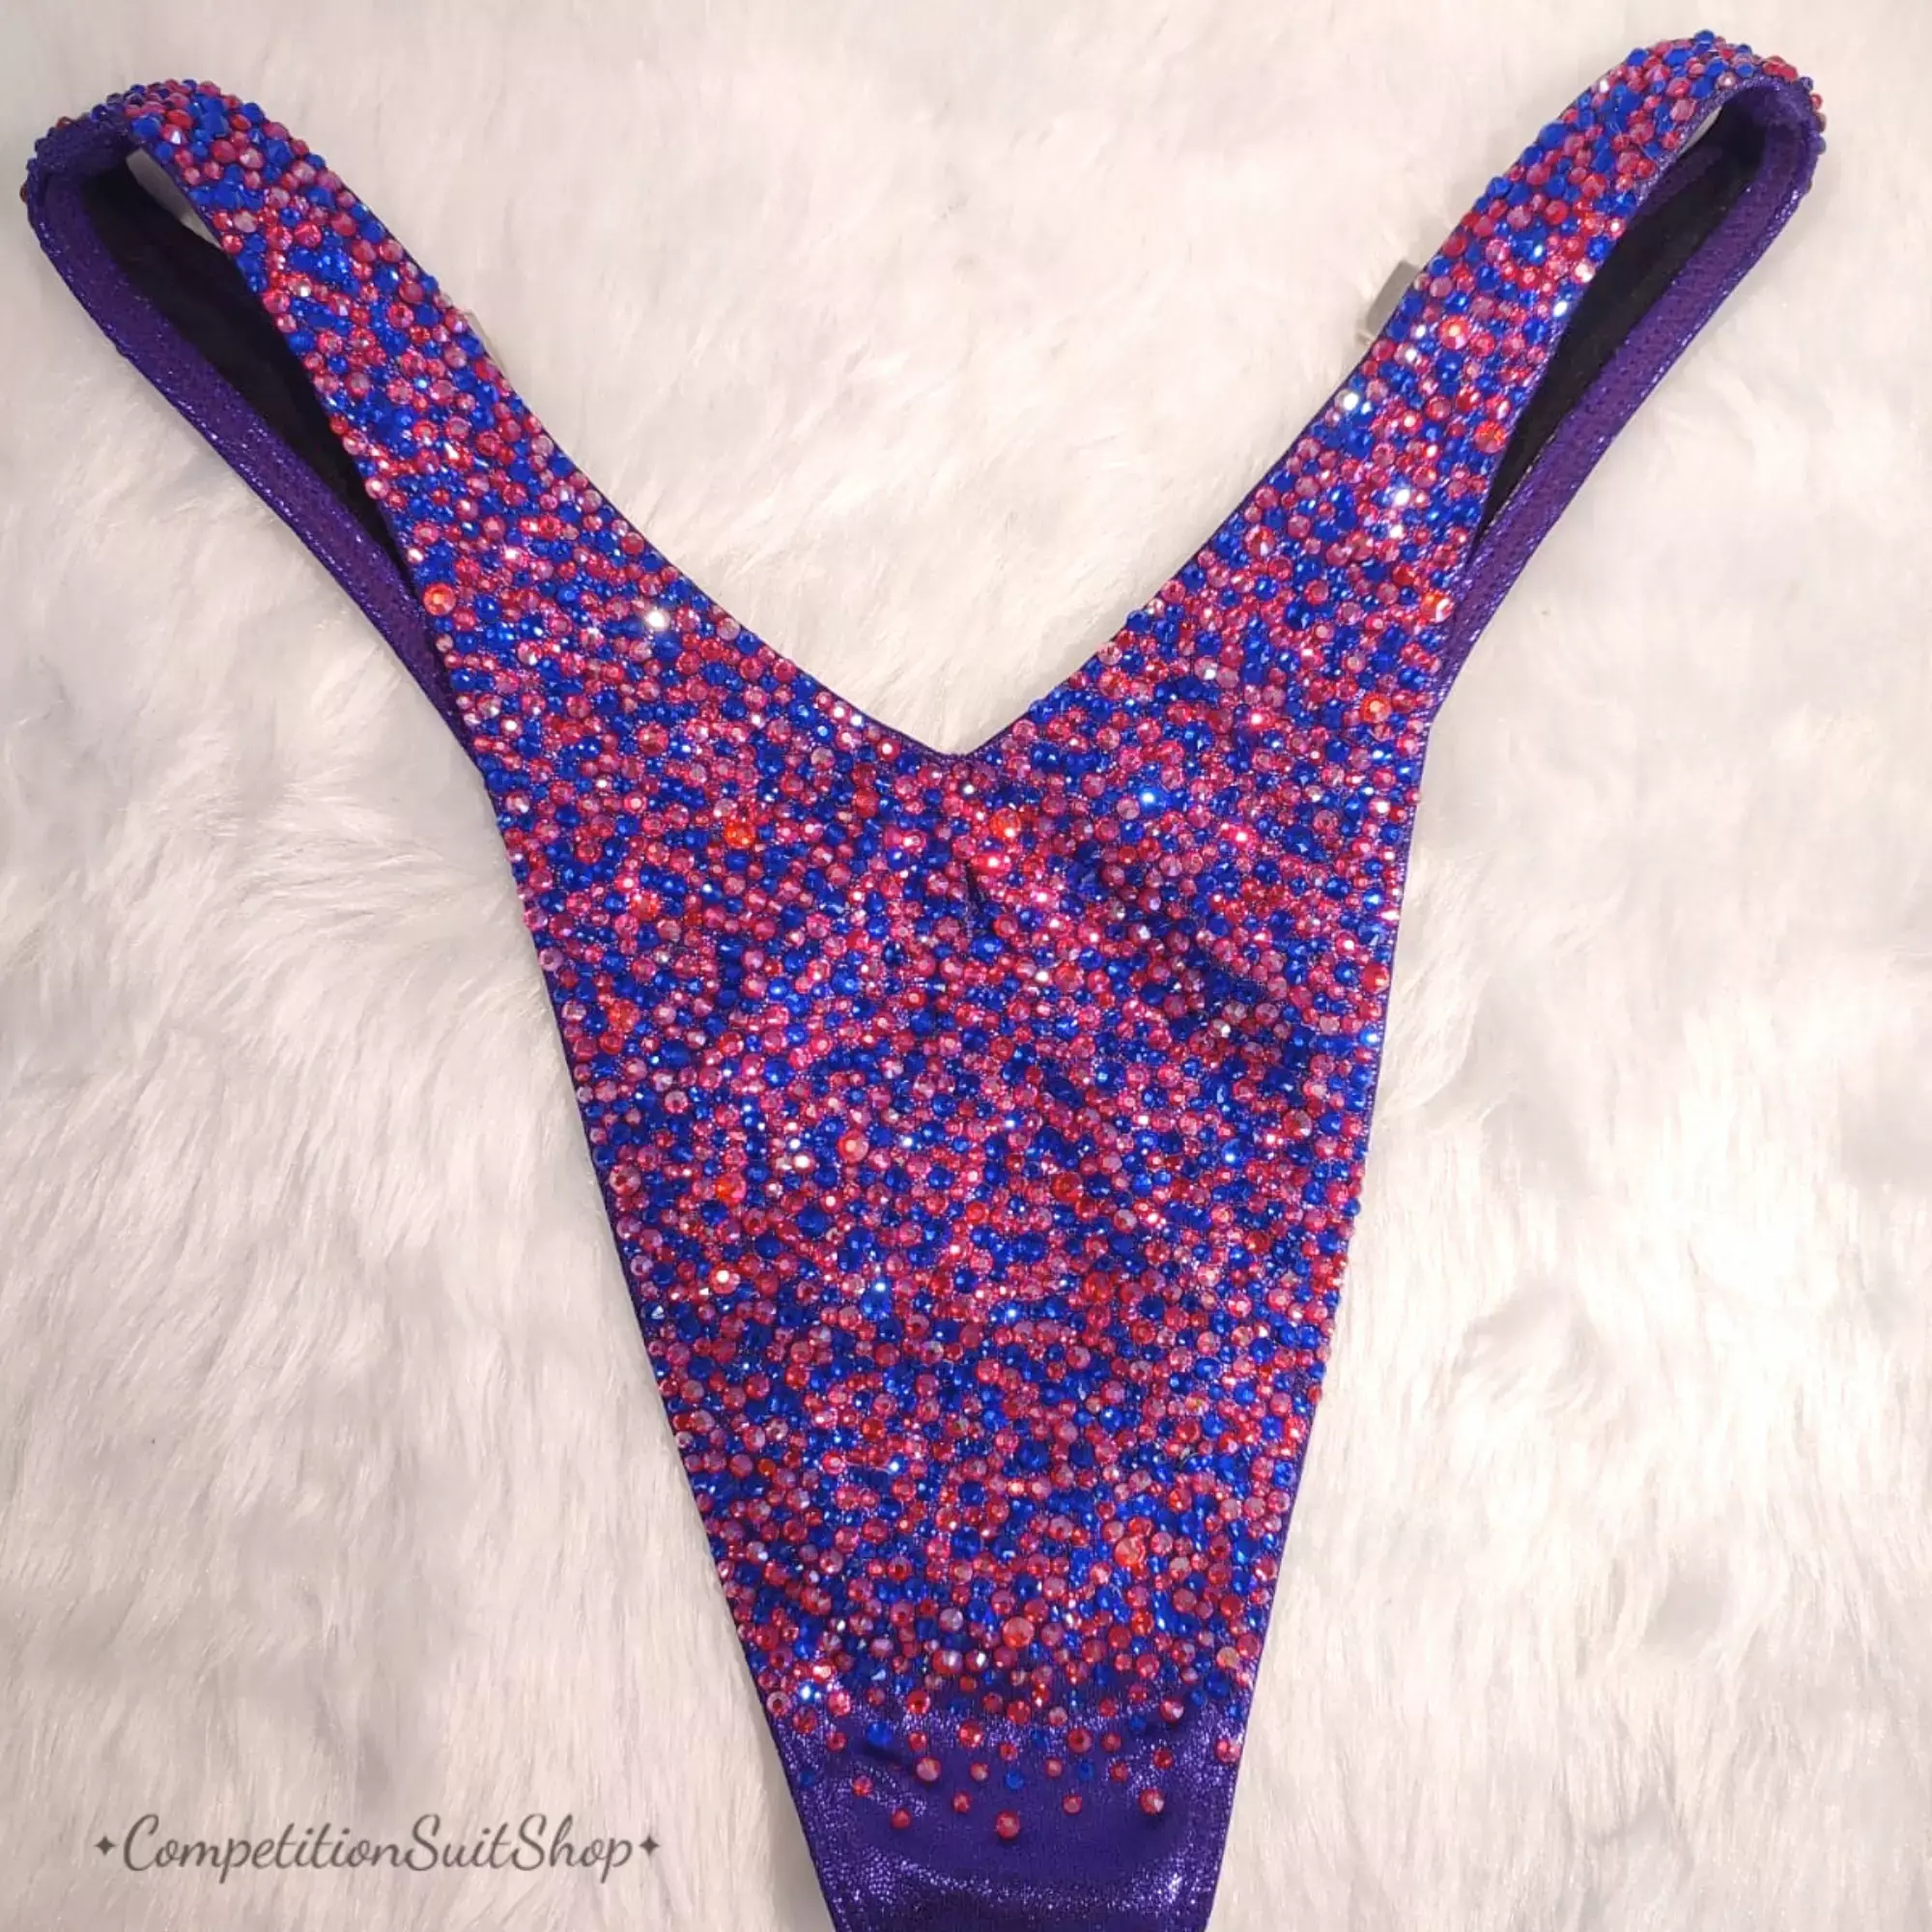 Candylicious Purple Blue Figure Competition Suit-F1023